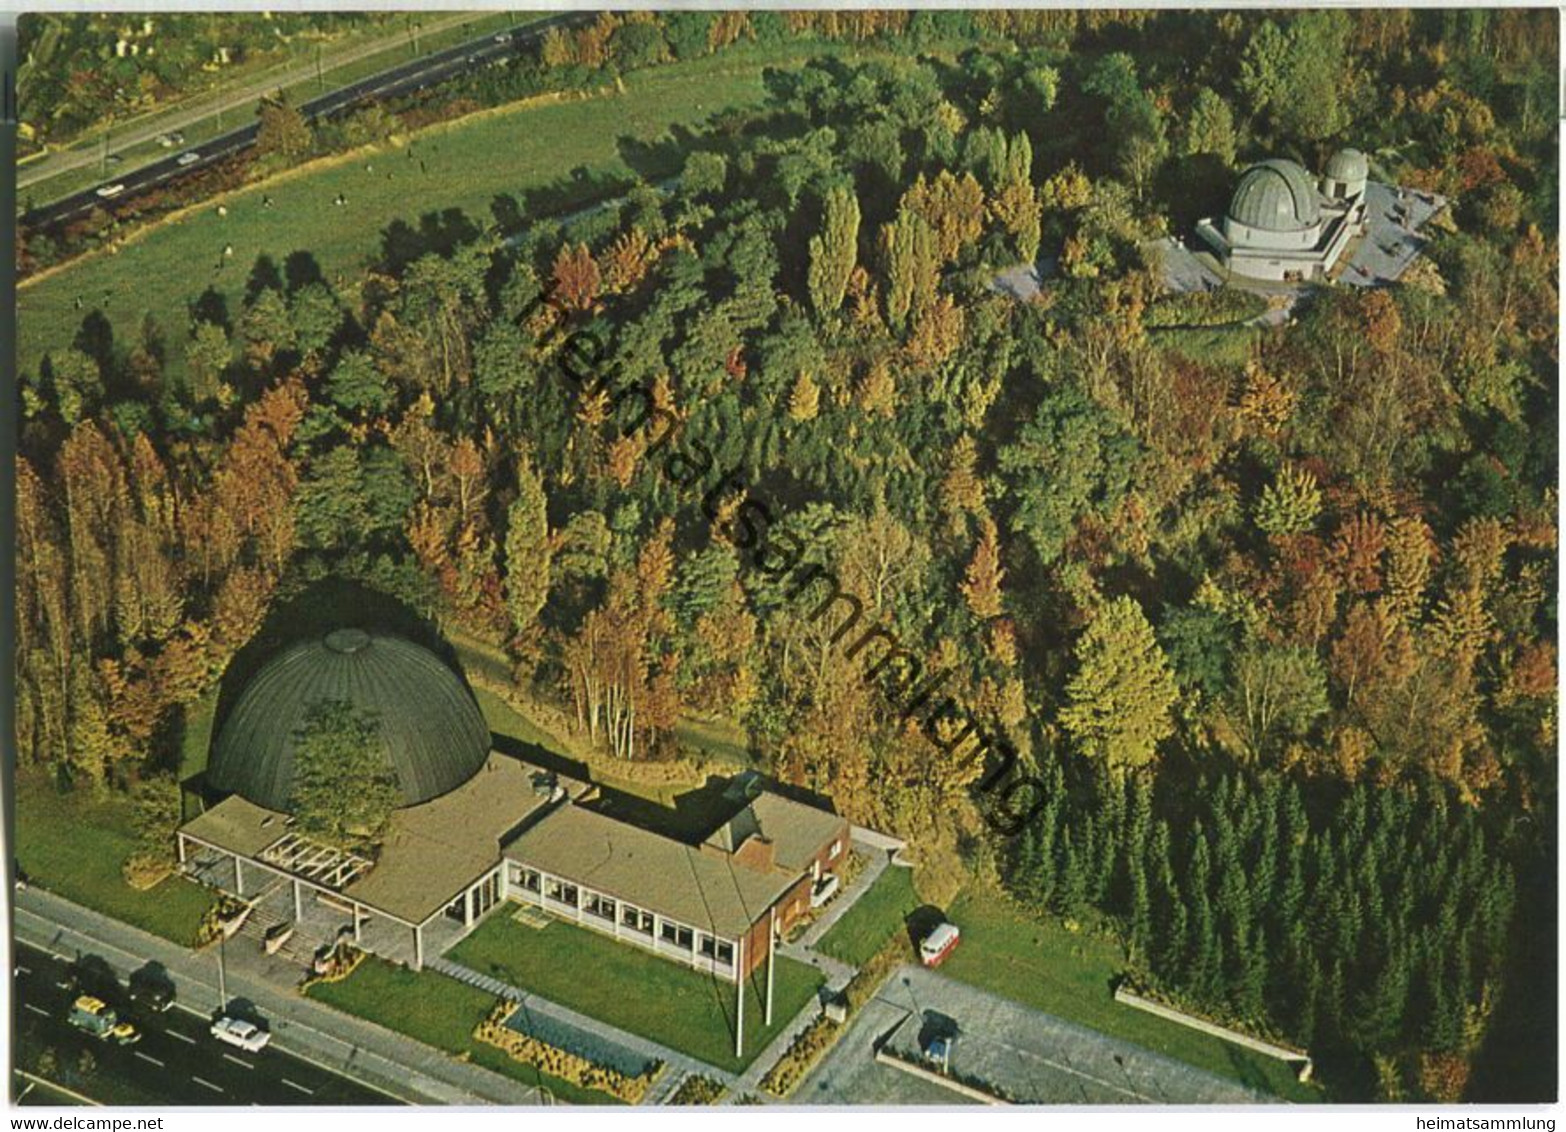 ZEISS-Planetarium Und Wilhelm-Foerster-Sternwarte Am Insulaner - Foto-AK - Luftaufnahme - Schöneberg